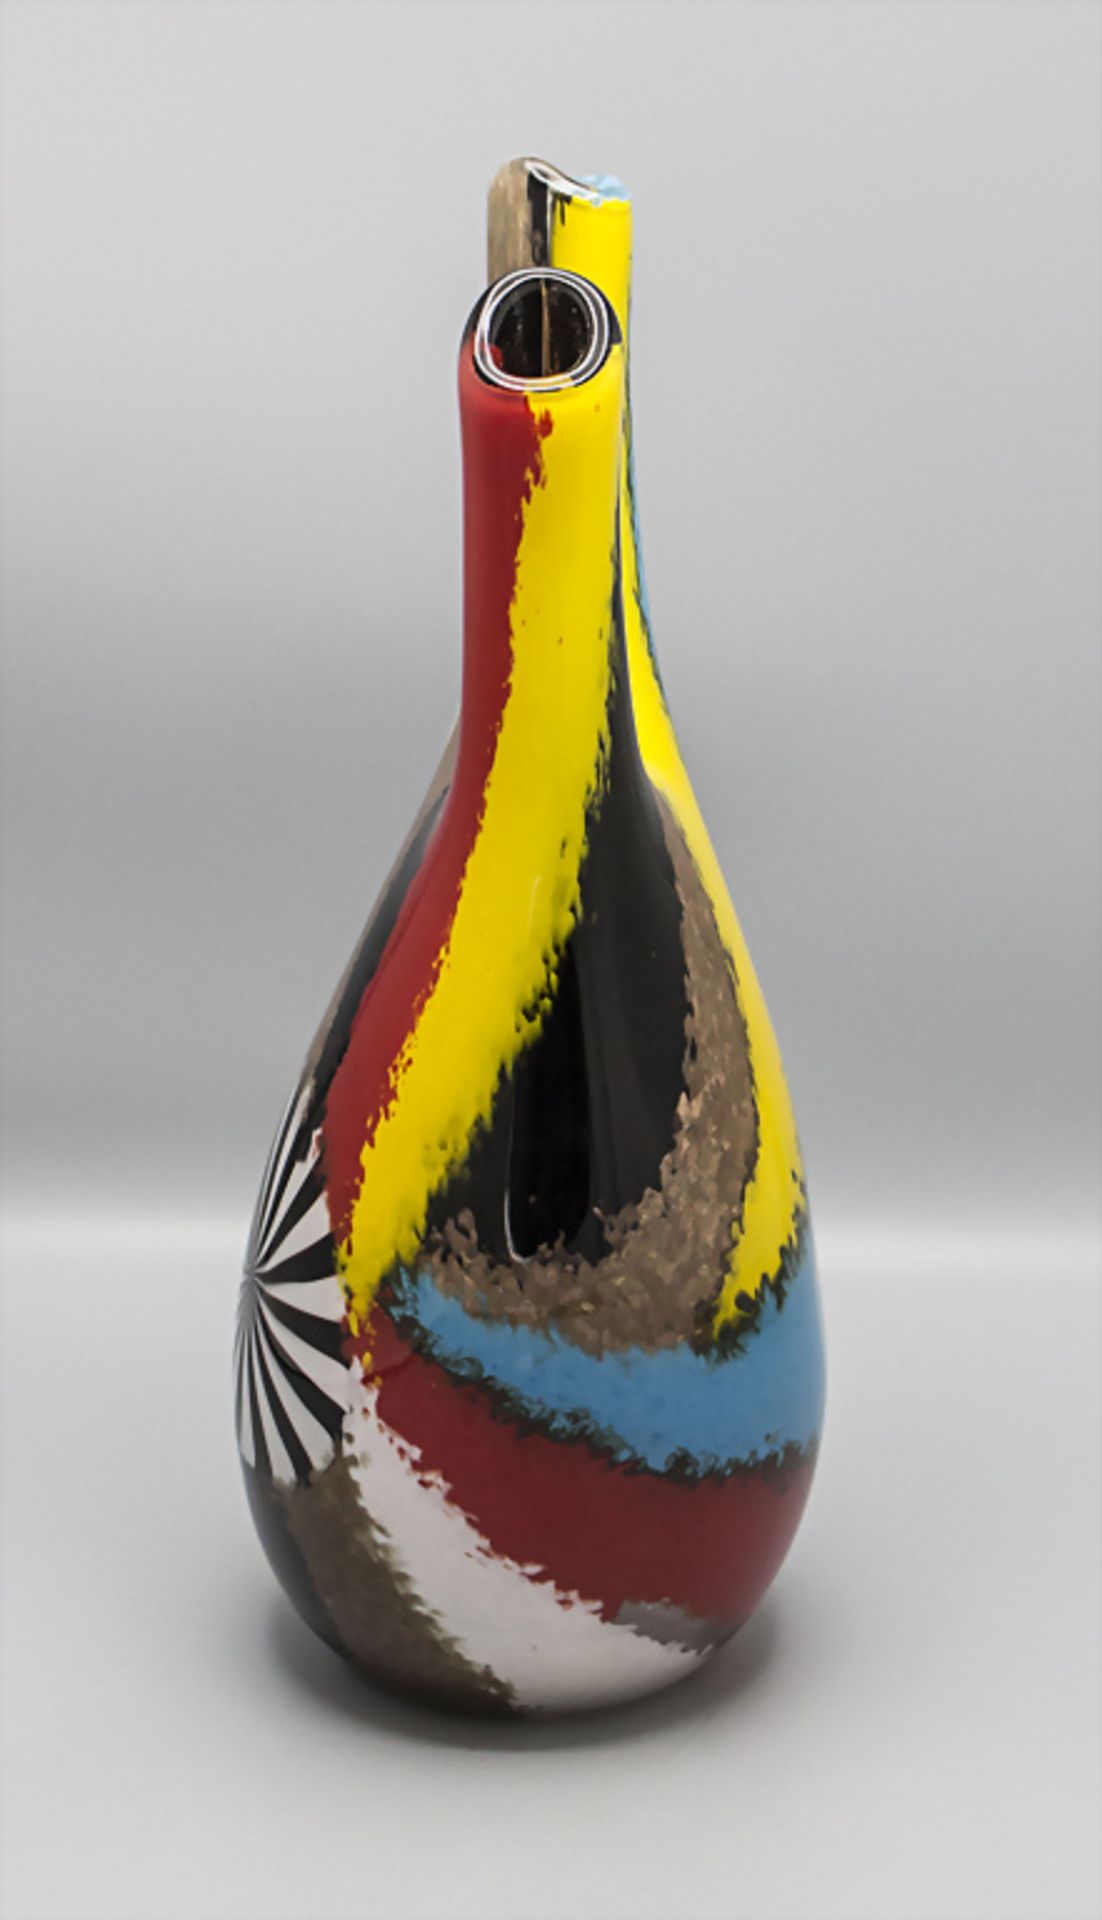 Doppelhalsvase / A double neck vase, Serie 'Oriente Salomone', Dino Martens, Murano, 1950 - Bild 4 aus 5